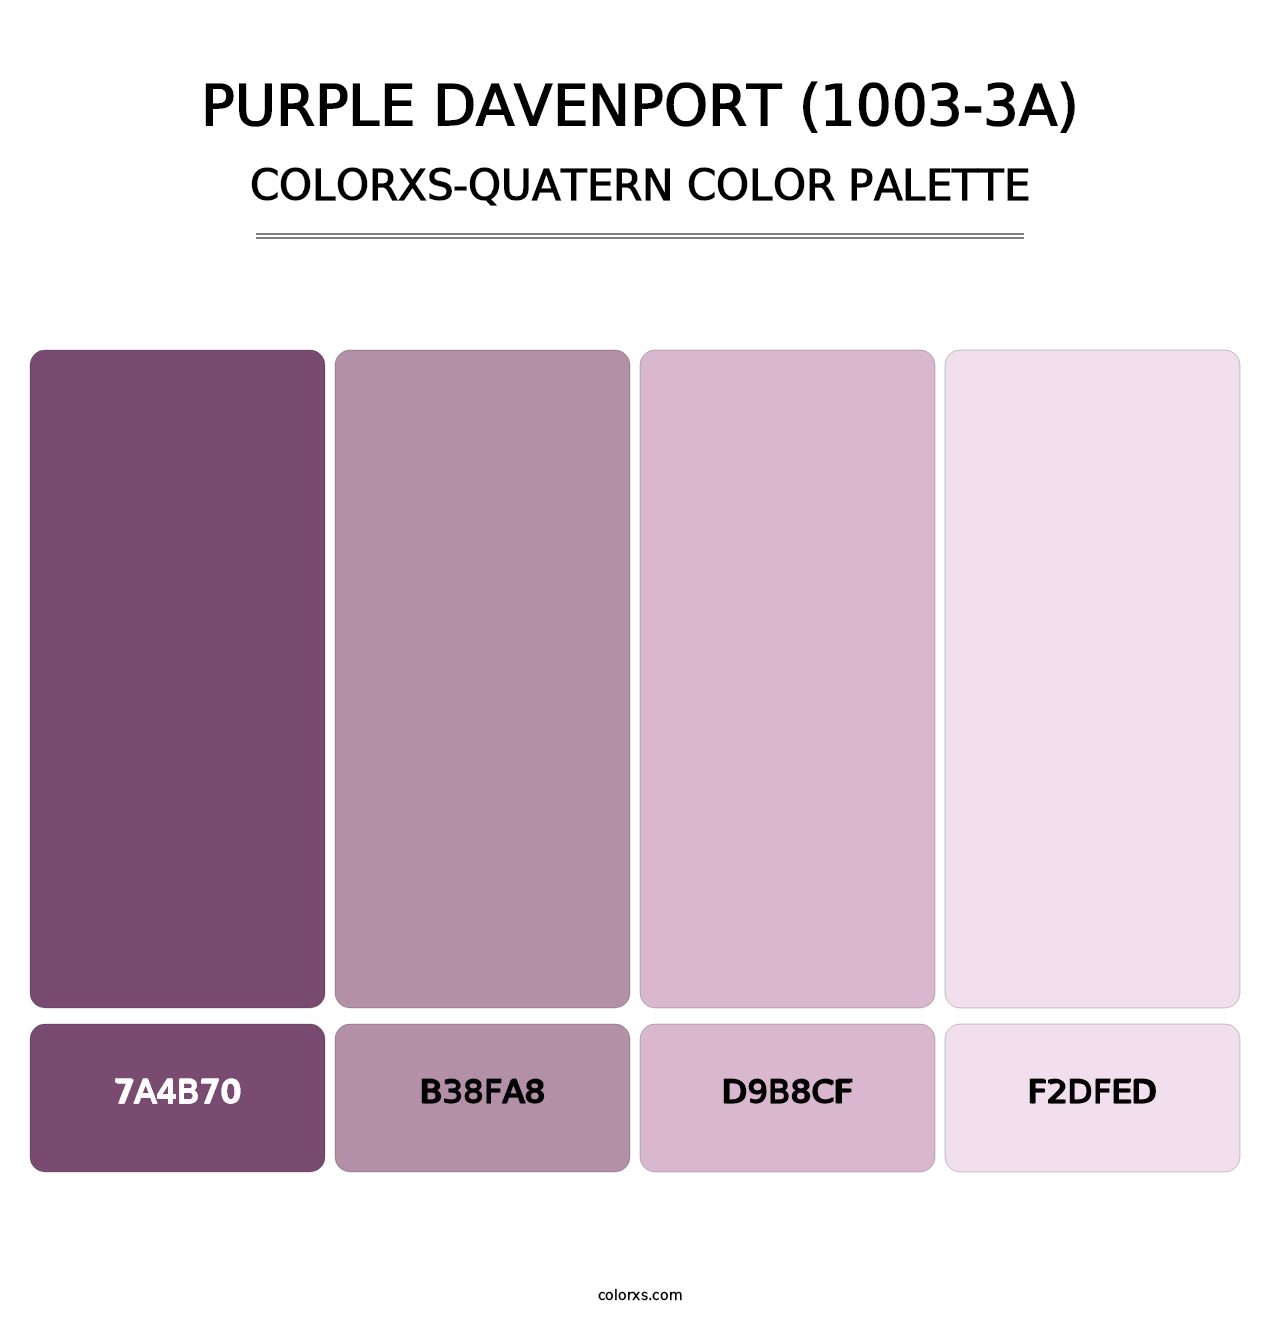 Purple Davenport (1003-3A) - Colorxs Quatern Palette